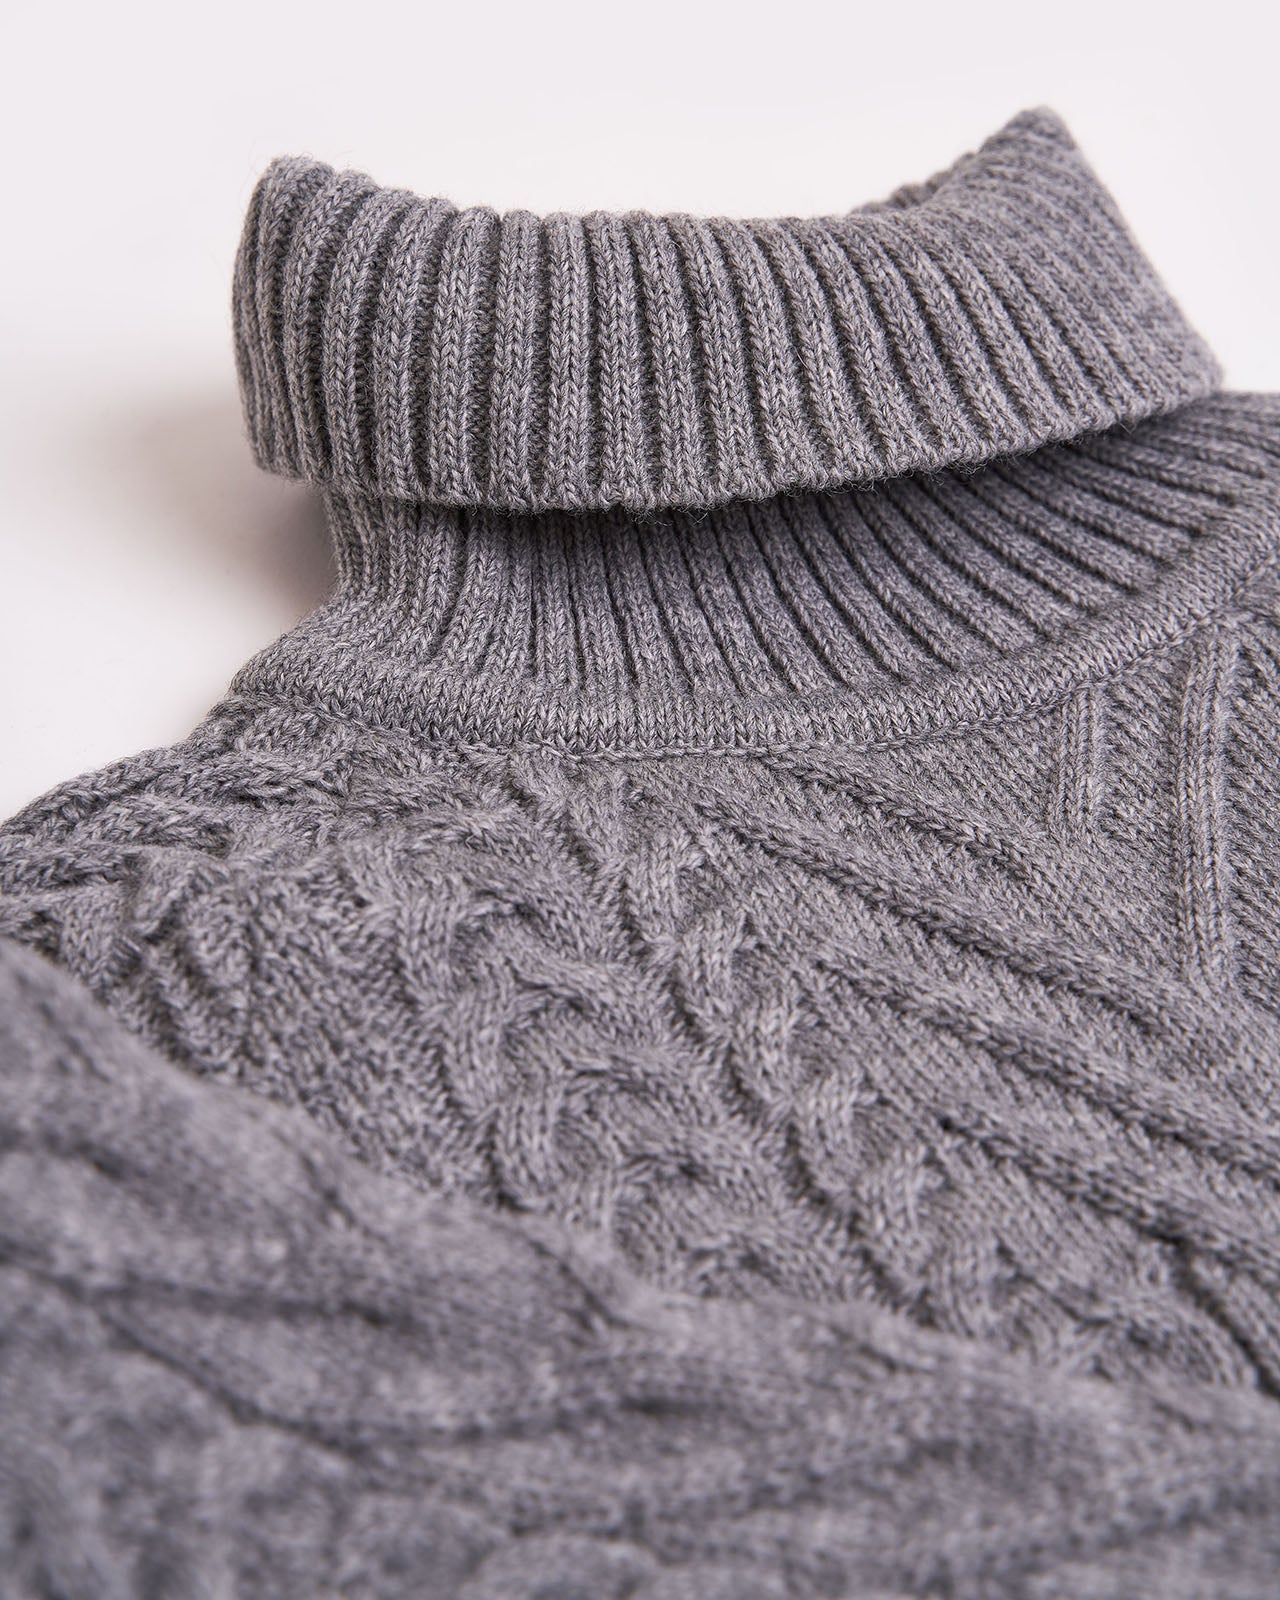 Turtleneck of women's wool braided sweater